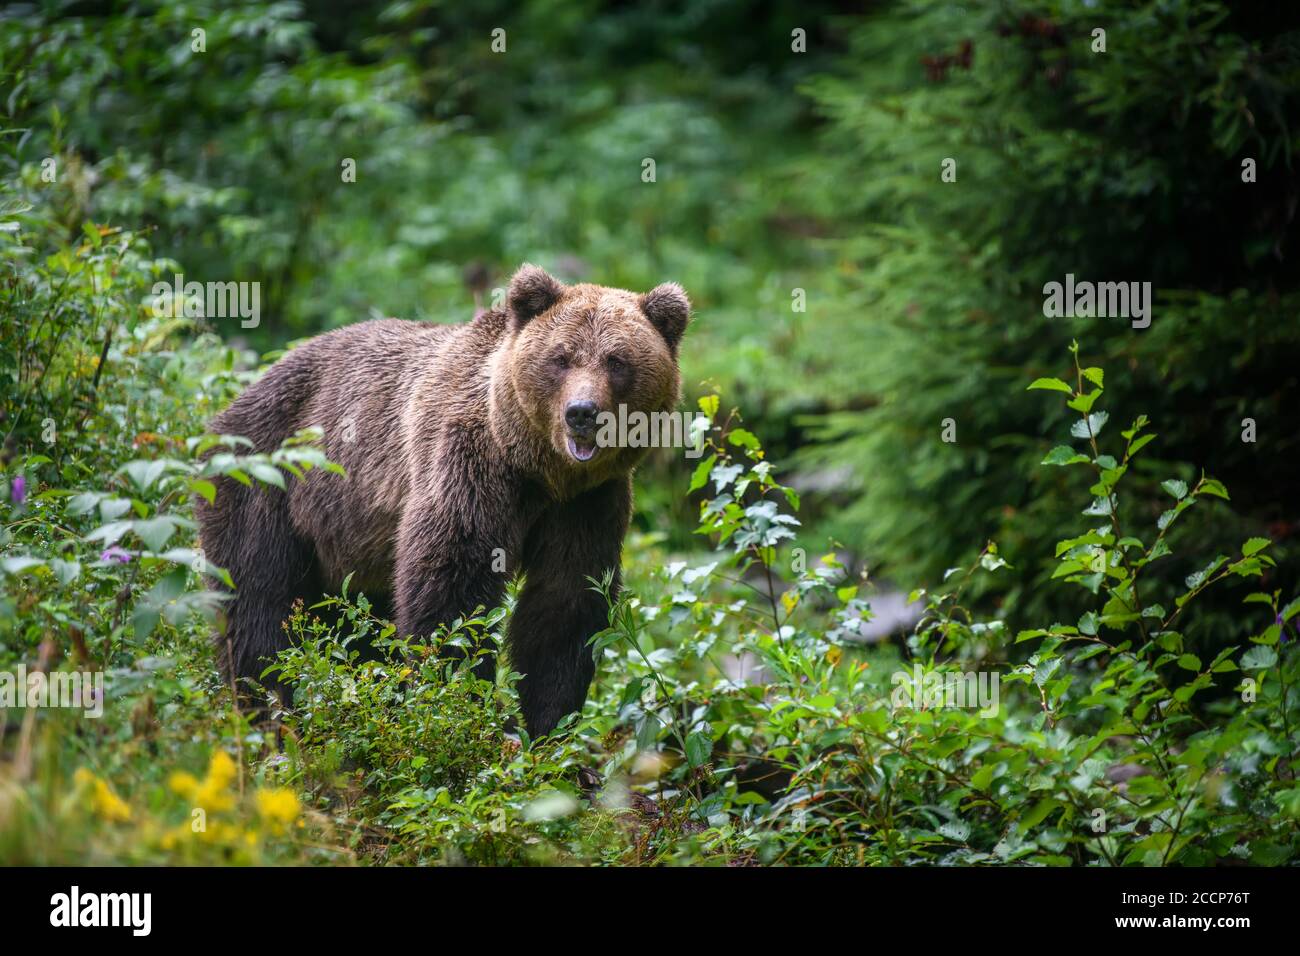 Oso pardo adulto salvaje ( Ursus arctos ) en el bosque de verano. Animal peligroso en la naturaleza. Escena de la vida silvestre Foto de stock